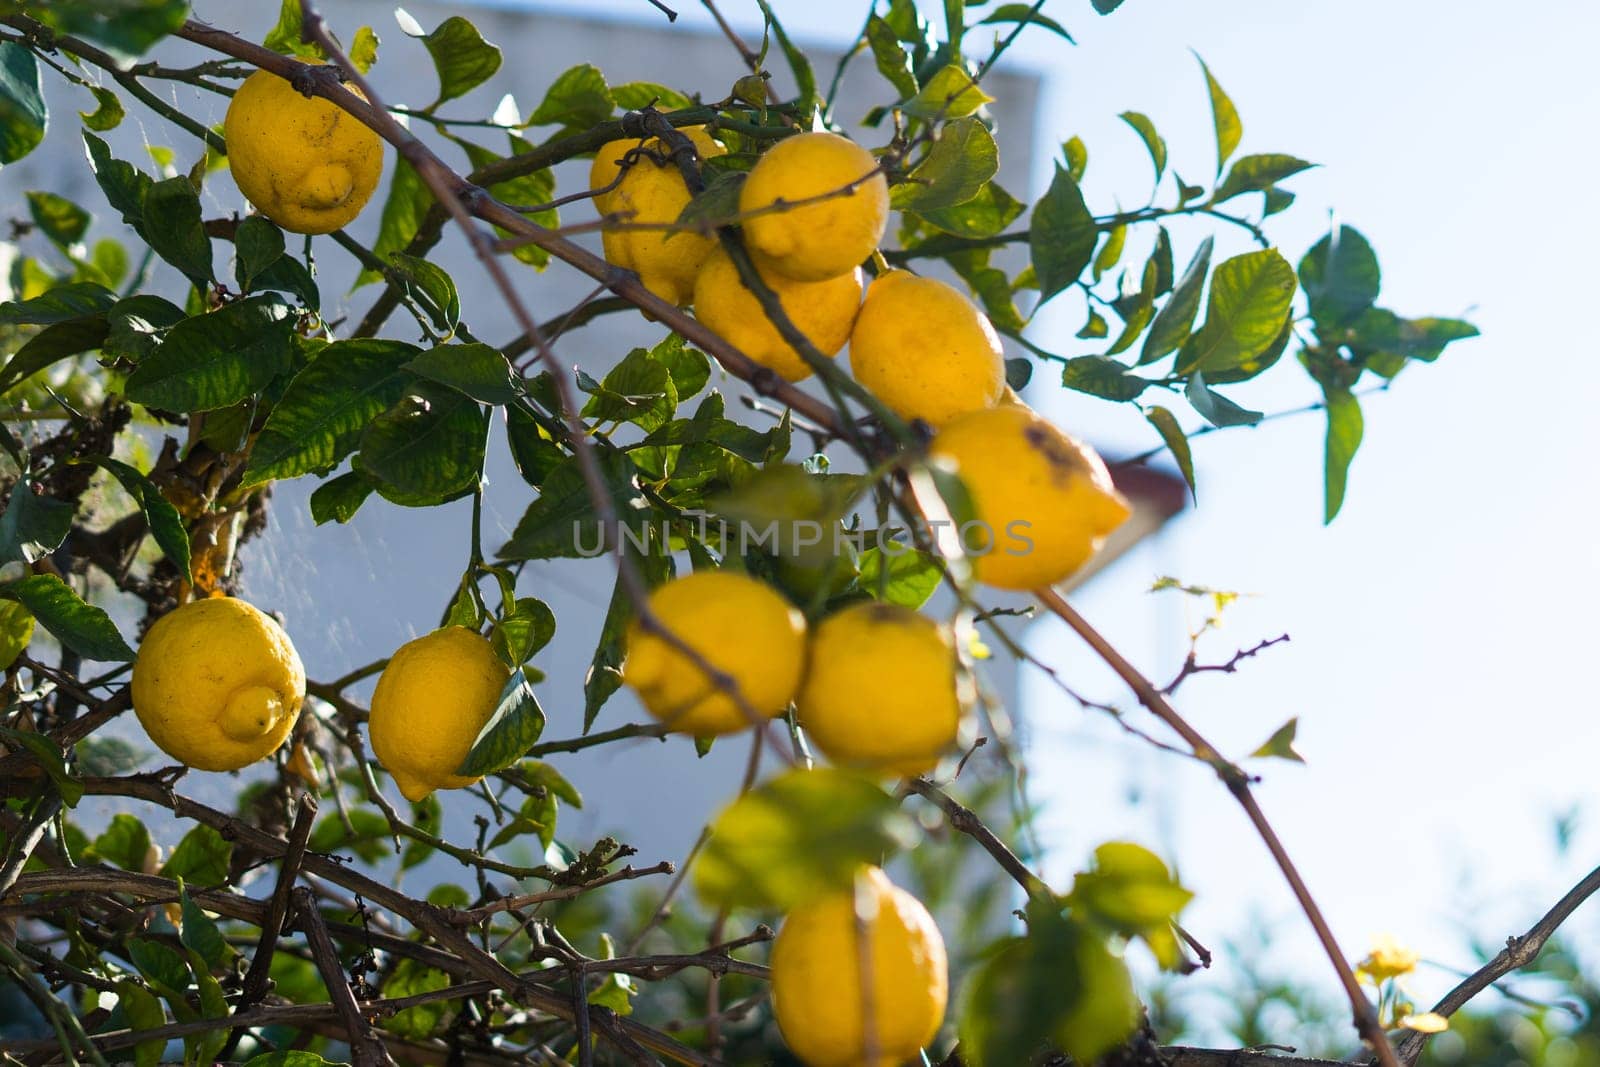 Lemon garden ready for harvest. Bunches of fresh yellow ripe lemons with green leaves. by Zelenin